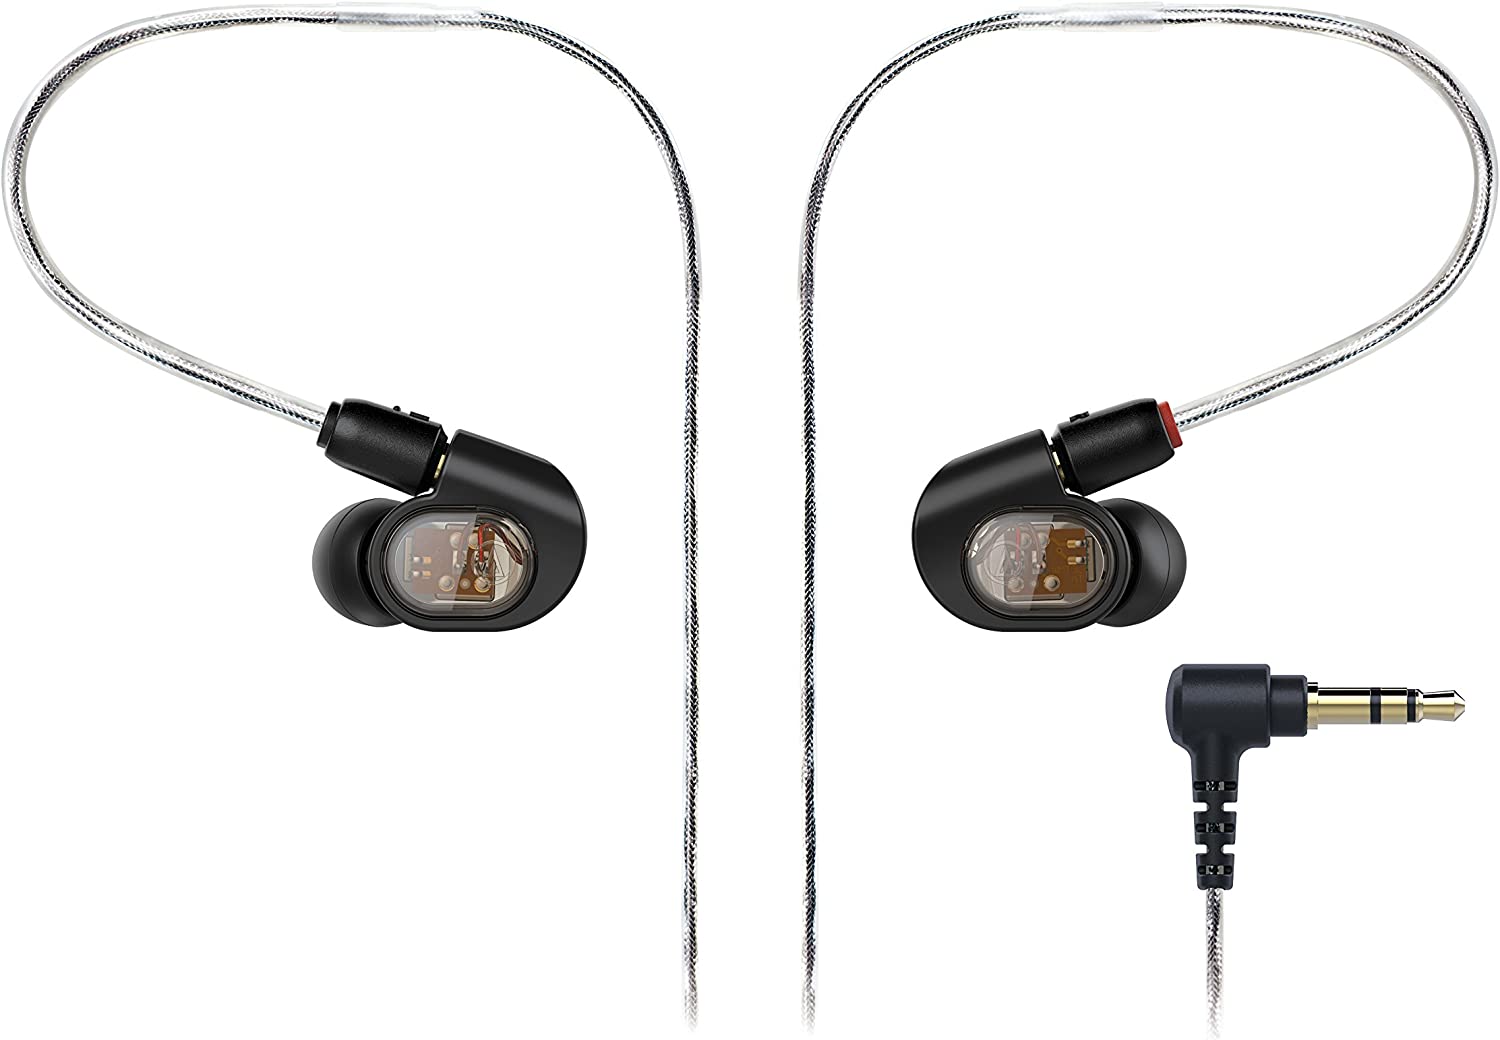 Audio-Technica ATH-SR6BTBK Bluetooth ワイヤレス オーバーイヤー ヘッドホン マイクコントロール付き イヤホン 、ヘッドホン